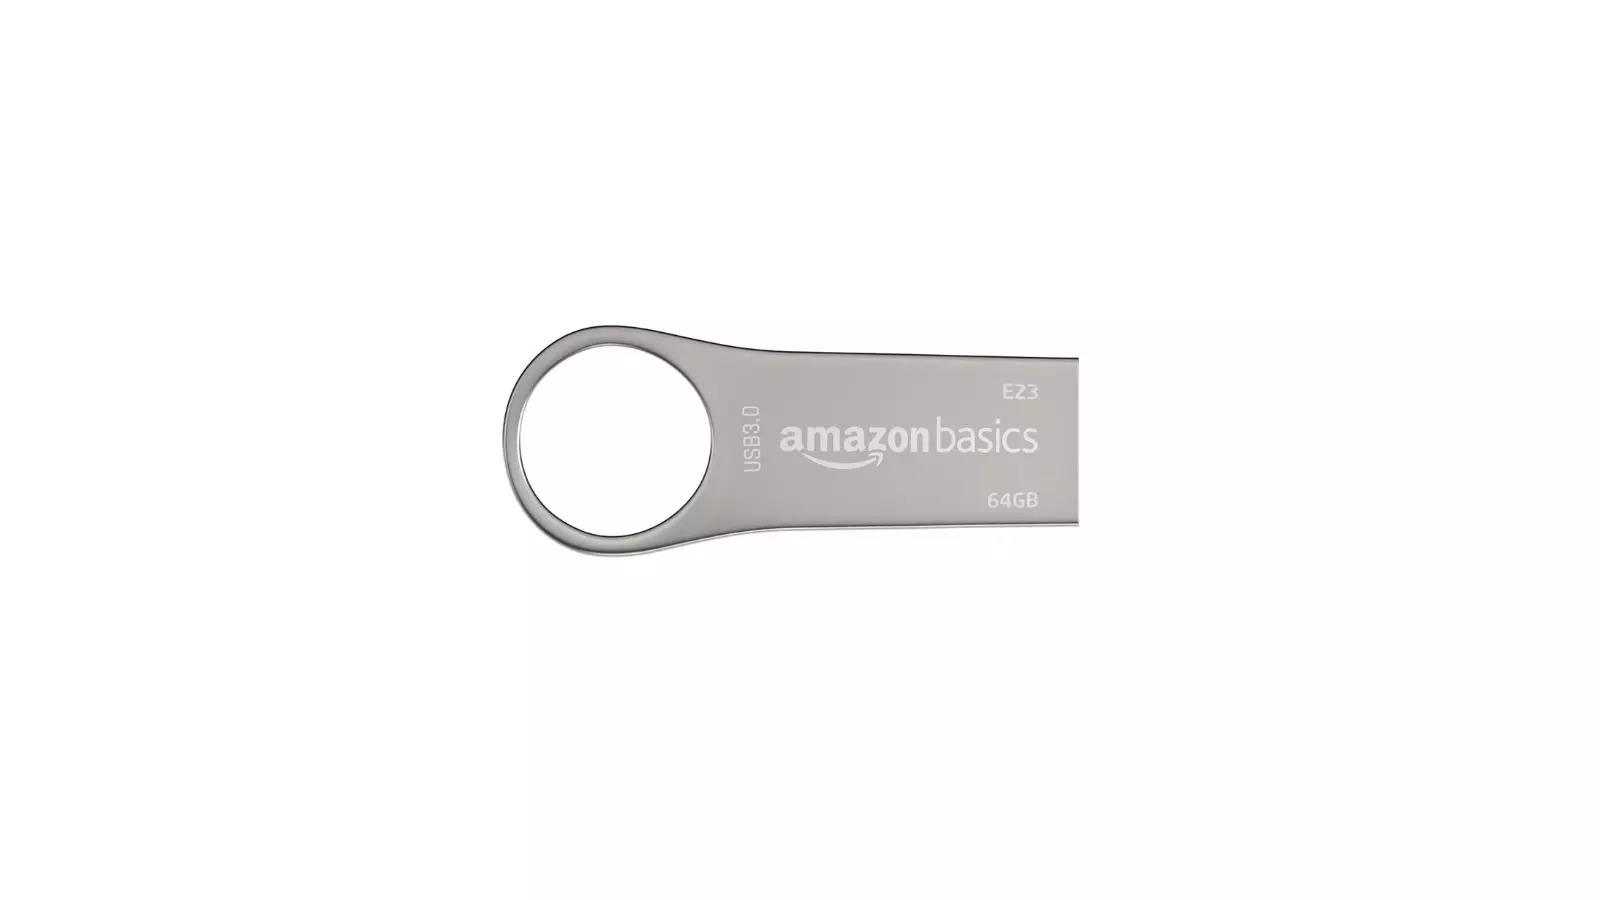 Amazon Basics 64 GB USB